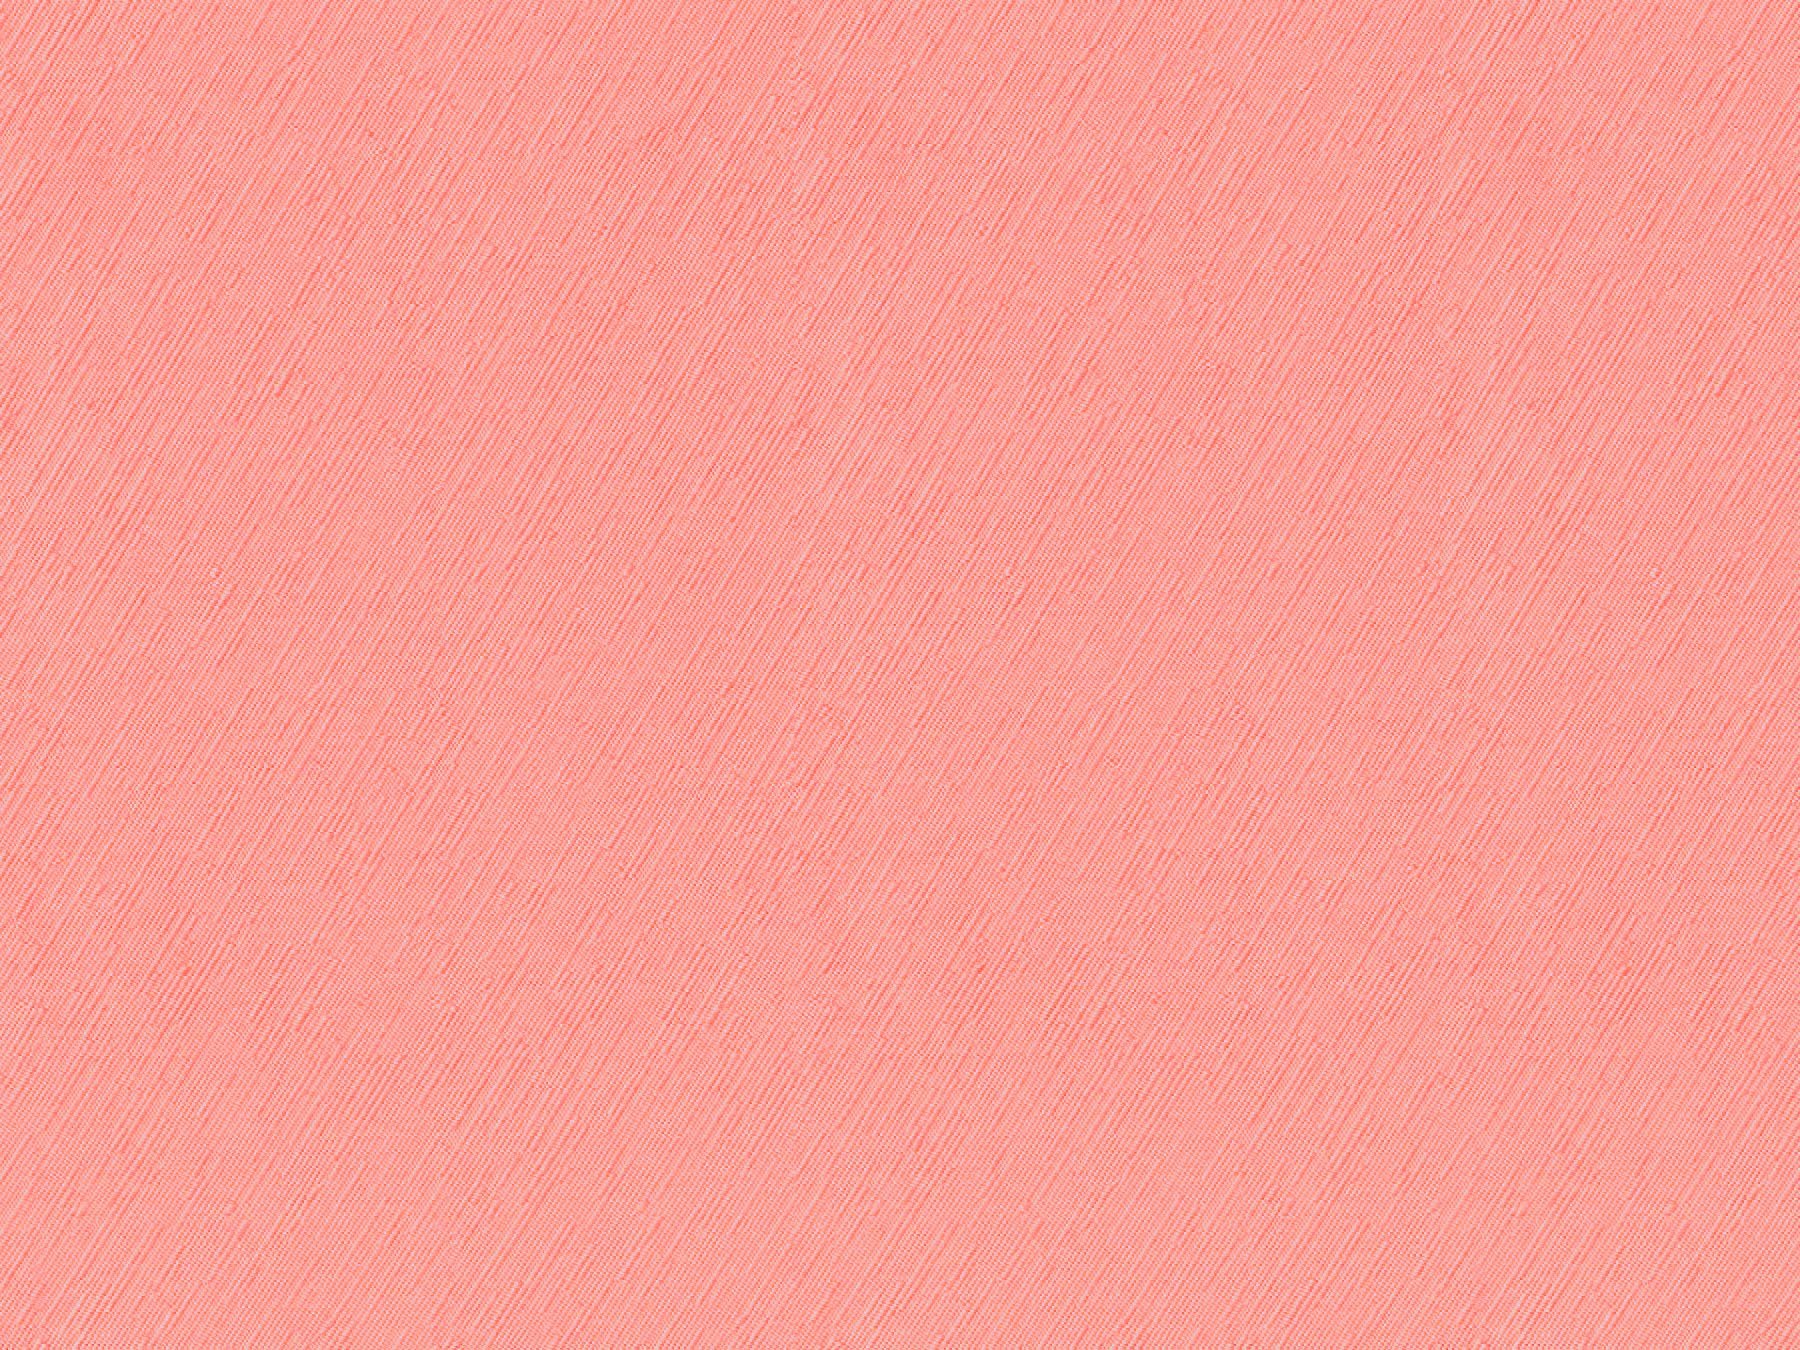 Розов теле бледно. Светло розовый цвет. Светло коралловый. Персиковый цвет. Бледно-розовый цвет.